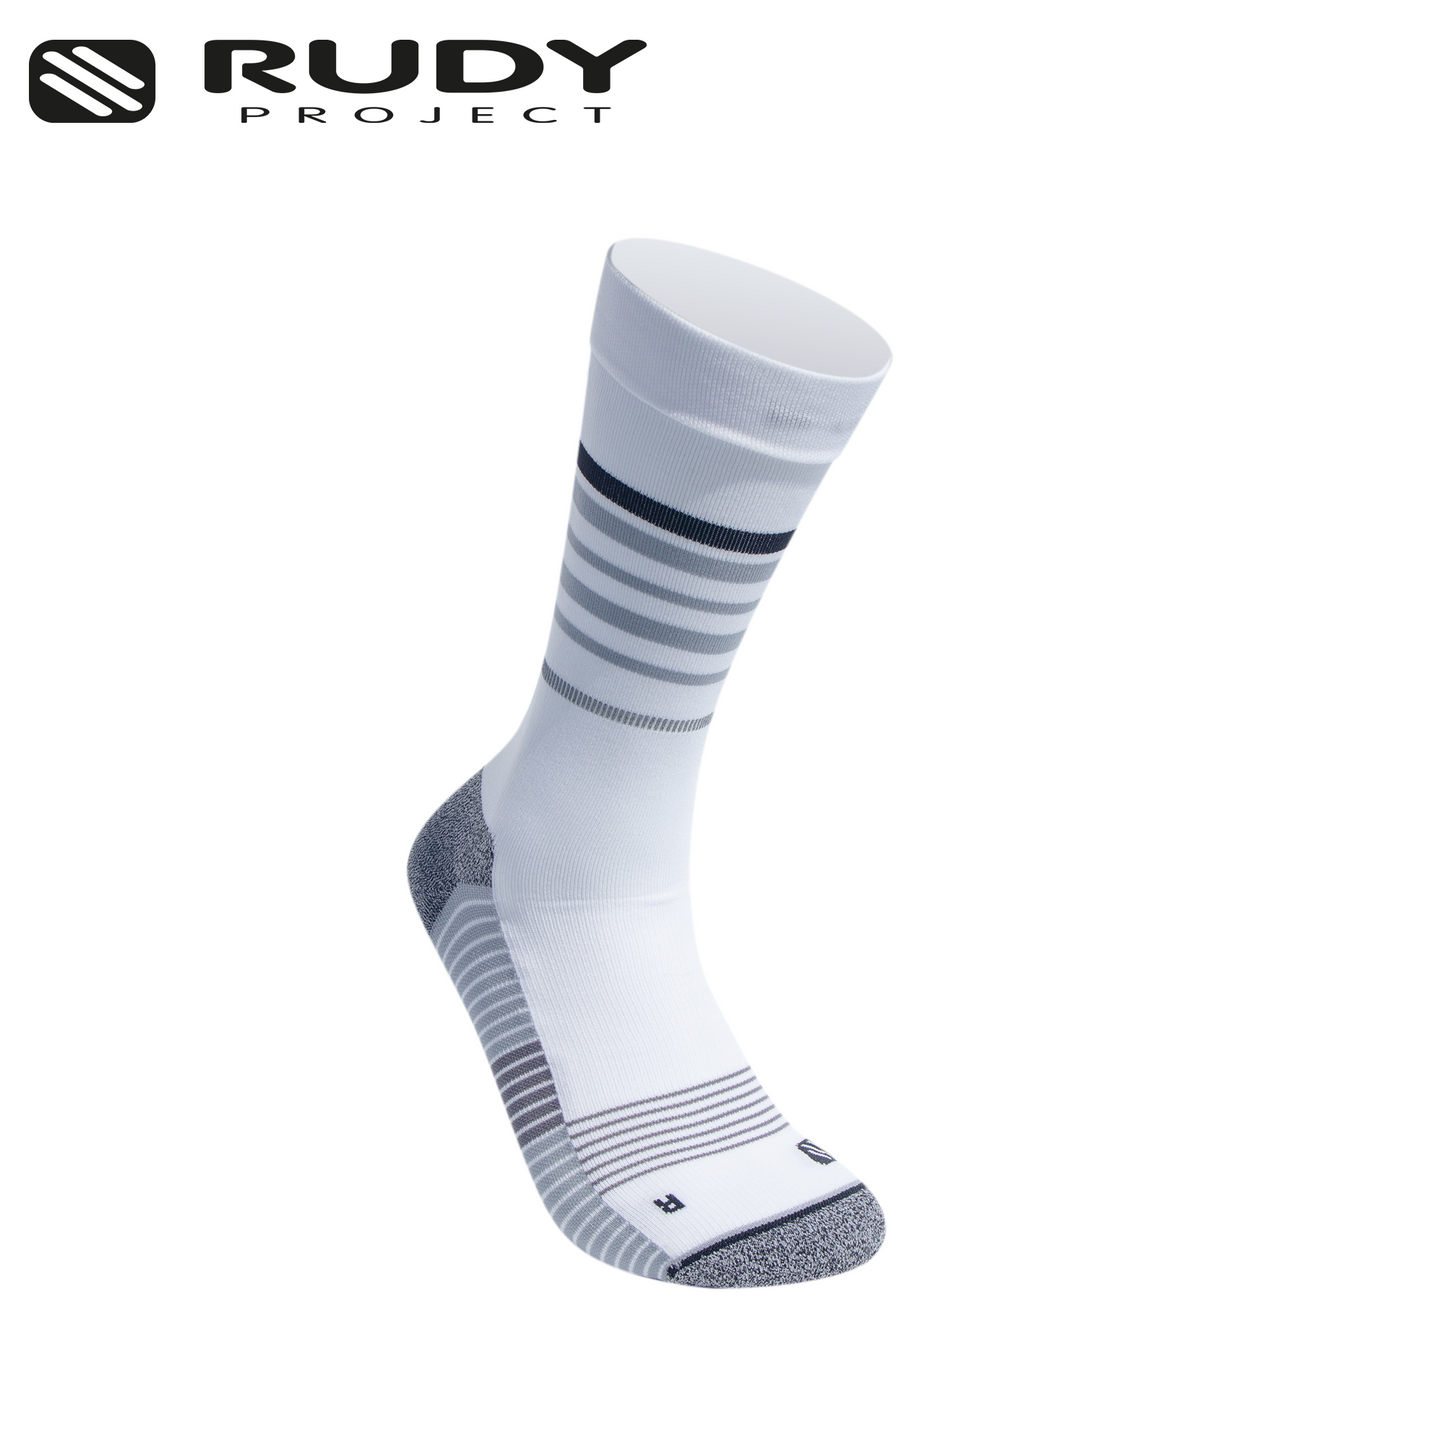 Rudy Project Long Cut Socks in White